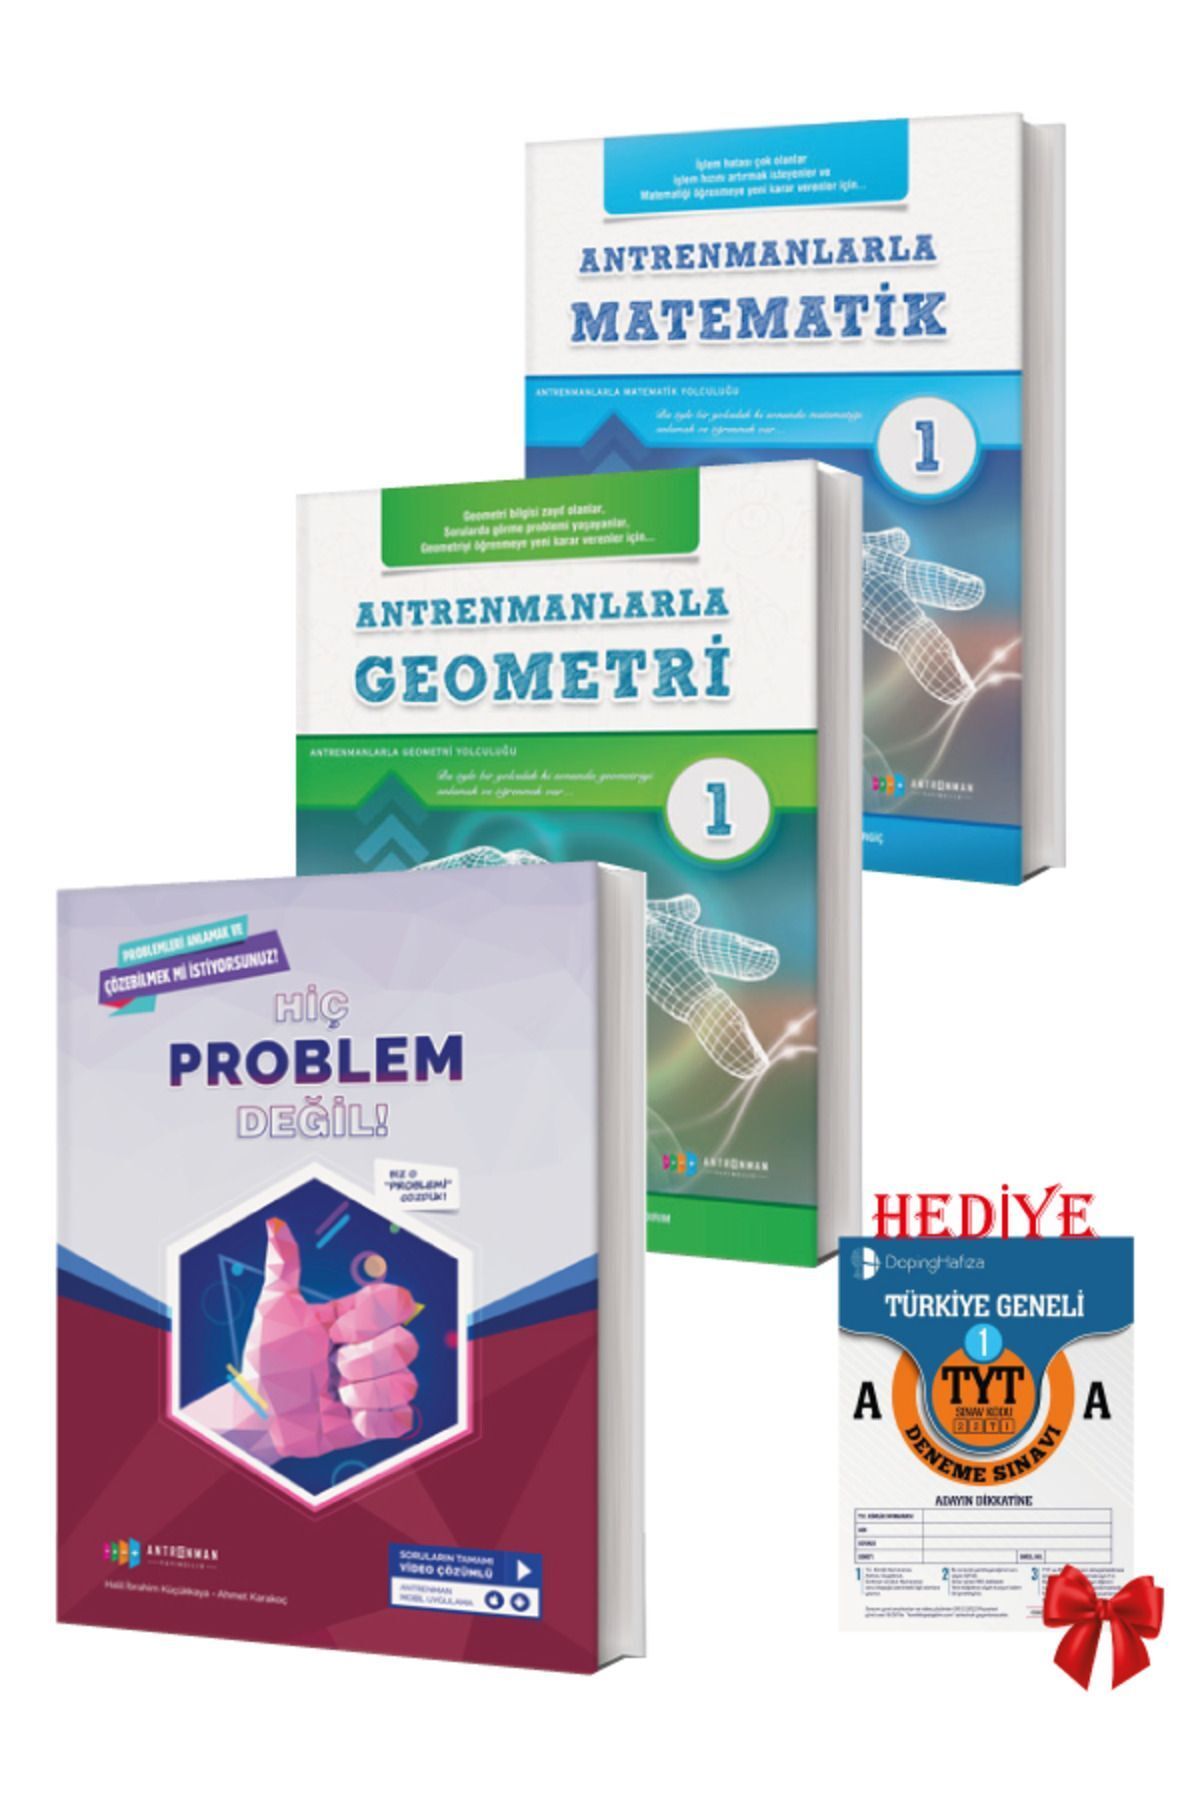 Antrenman Yayıncılık Antremanlarla Matematik Başlangıç Seti HEDİYELİ (Matematik1,Geometri1,Hiç Problem Değil)